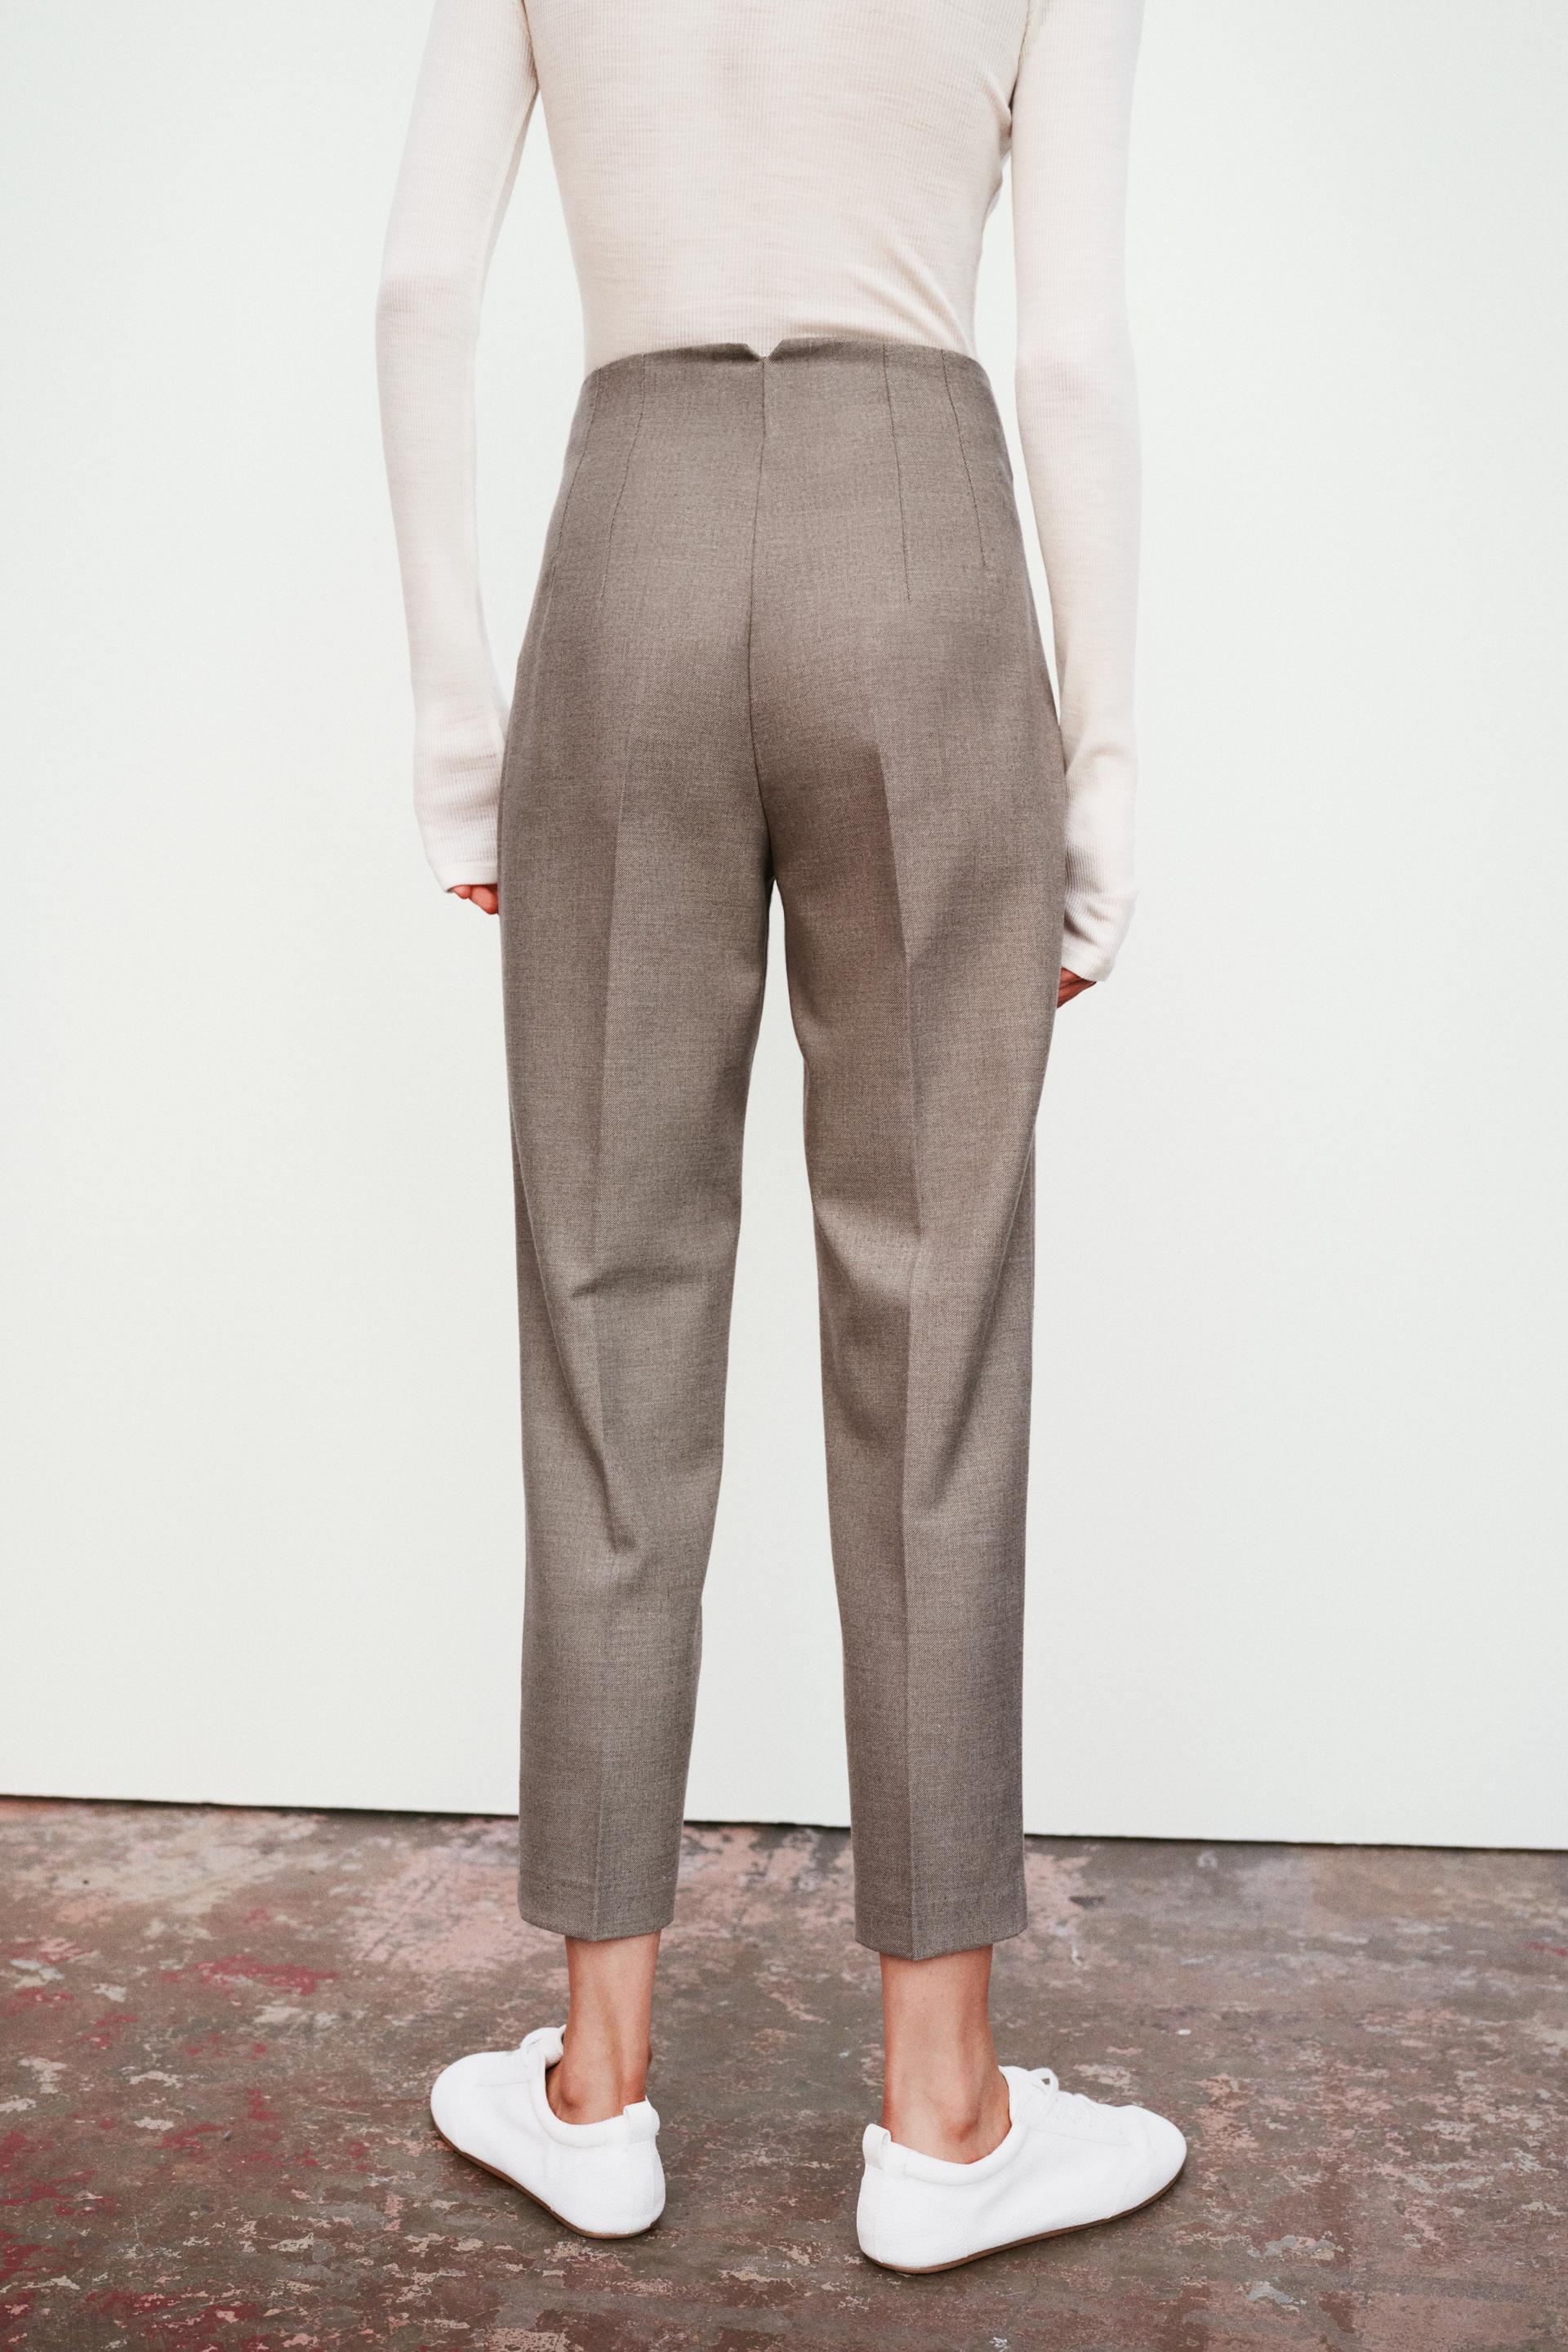 Zara High Waisted Flat Front Pants w/ Gold Button Detail Size Medium 